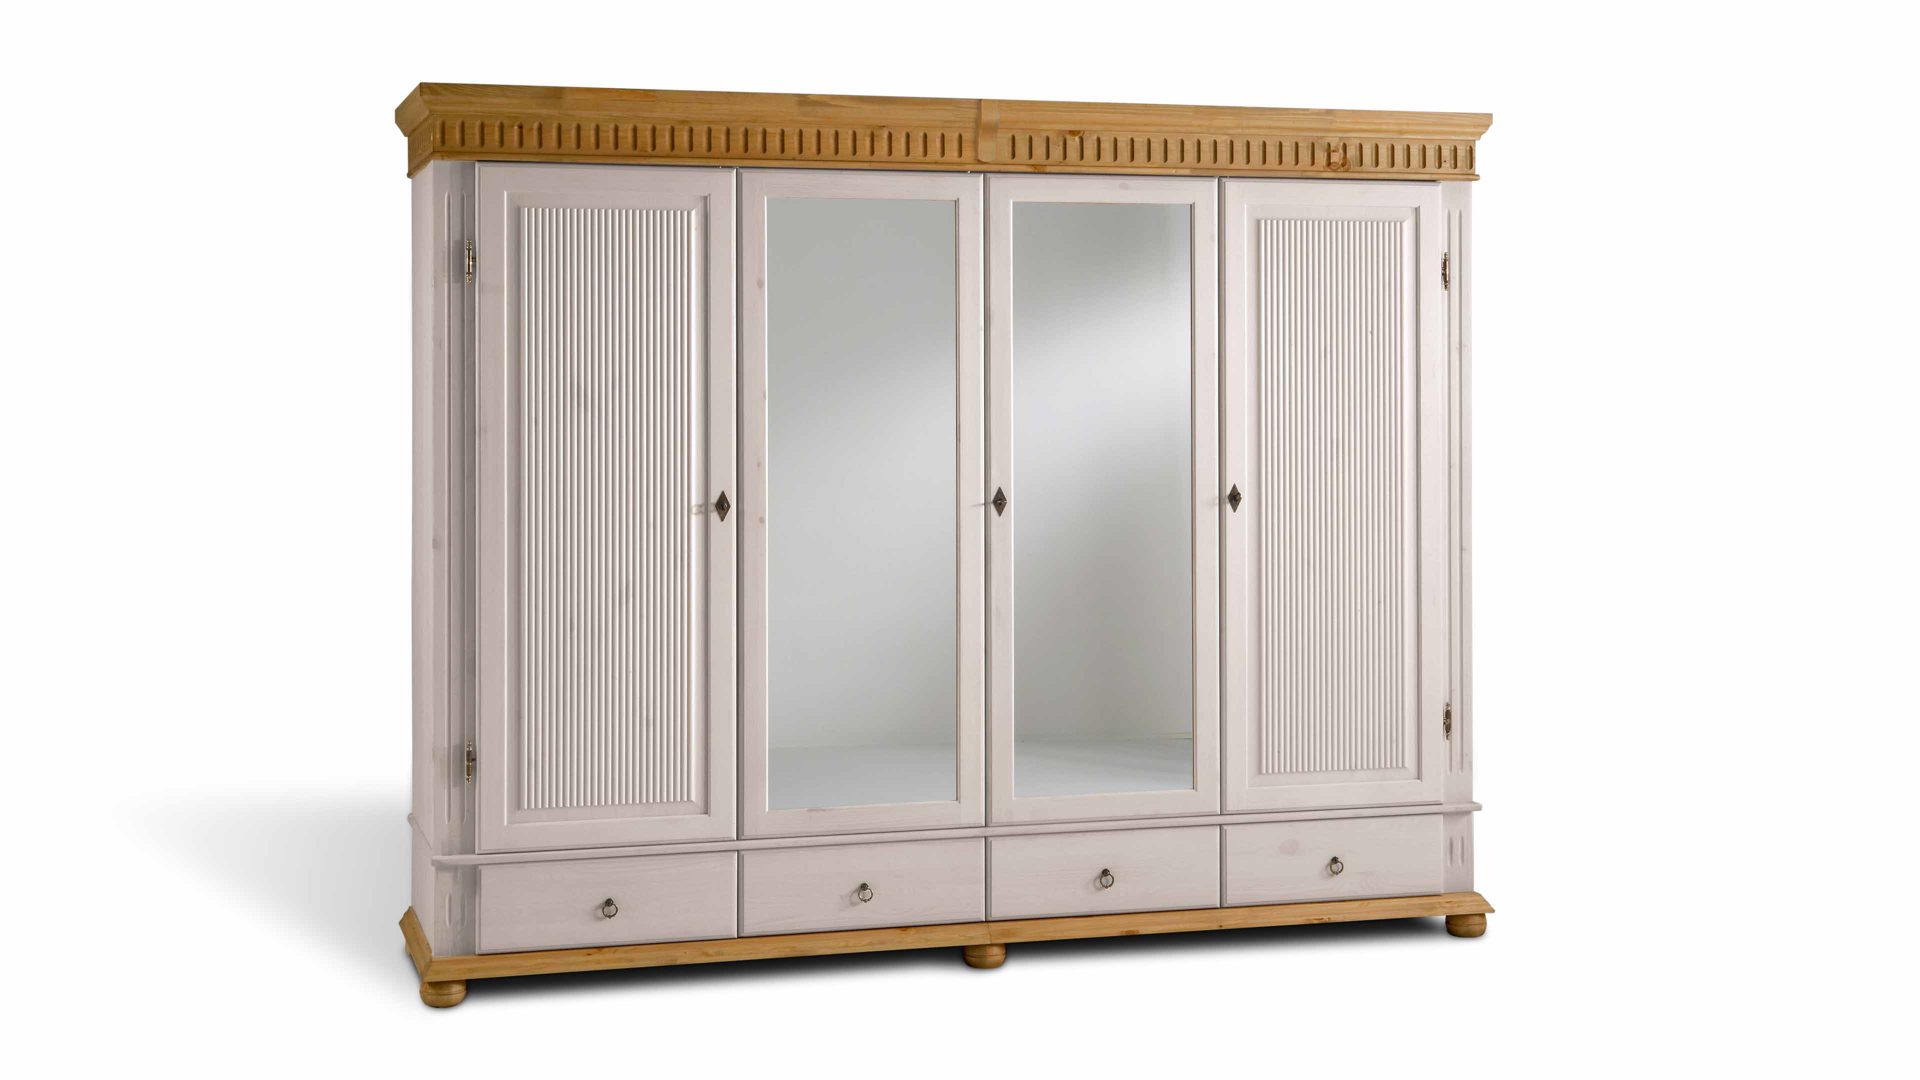 Kleiderschrank Euro diffusion aus Holz in Weiß Kleiderschrank, ein Schlafzimmermöbel aus massiver Kiefer weiß lackiertes & antikfarbenes Kiefernholz - zwei Holztüren & zwei Spiegeltüren, vier Schubladen